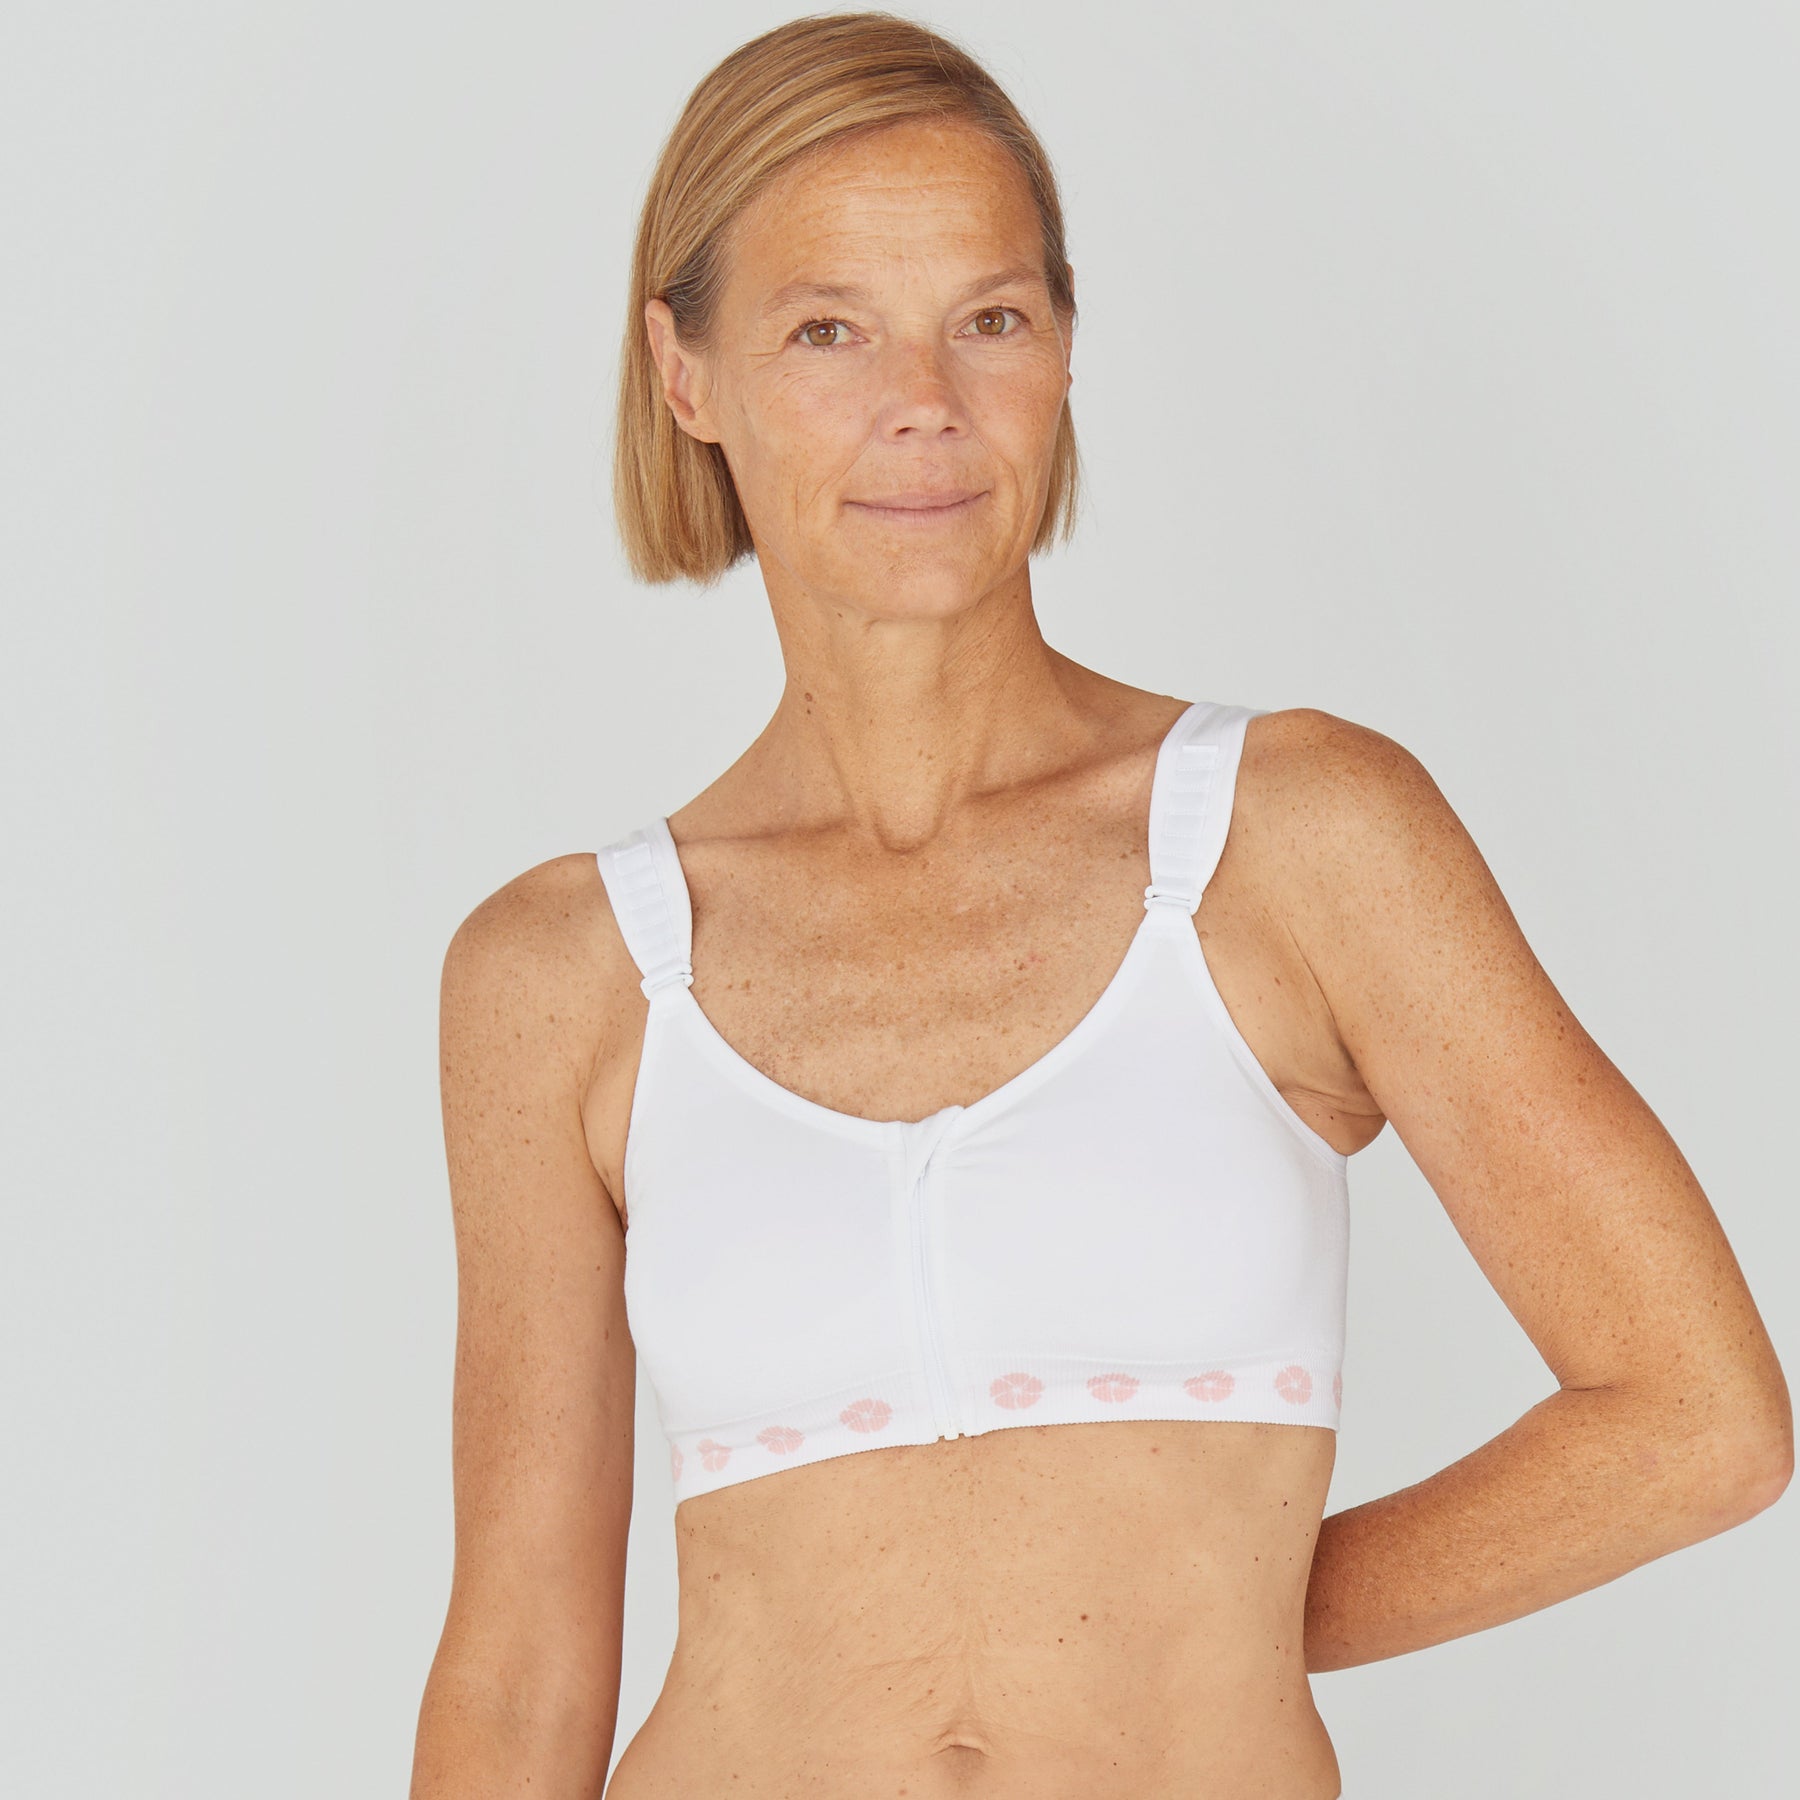 Mastectomy-friendly underwear brands for breast cancer survivors